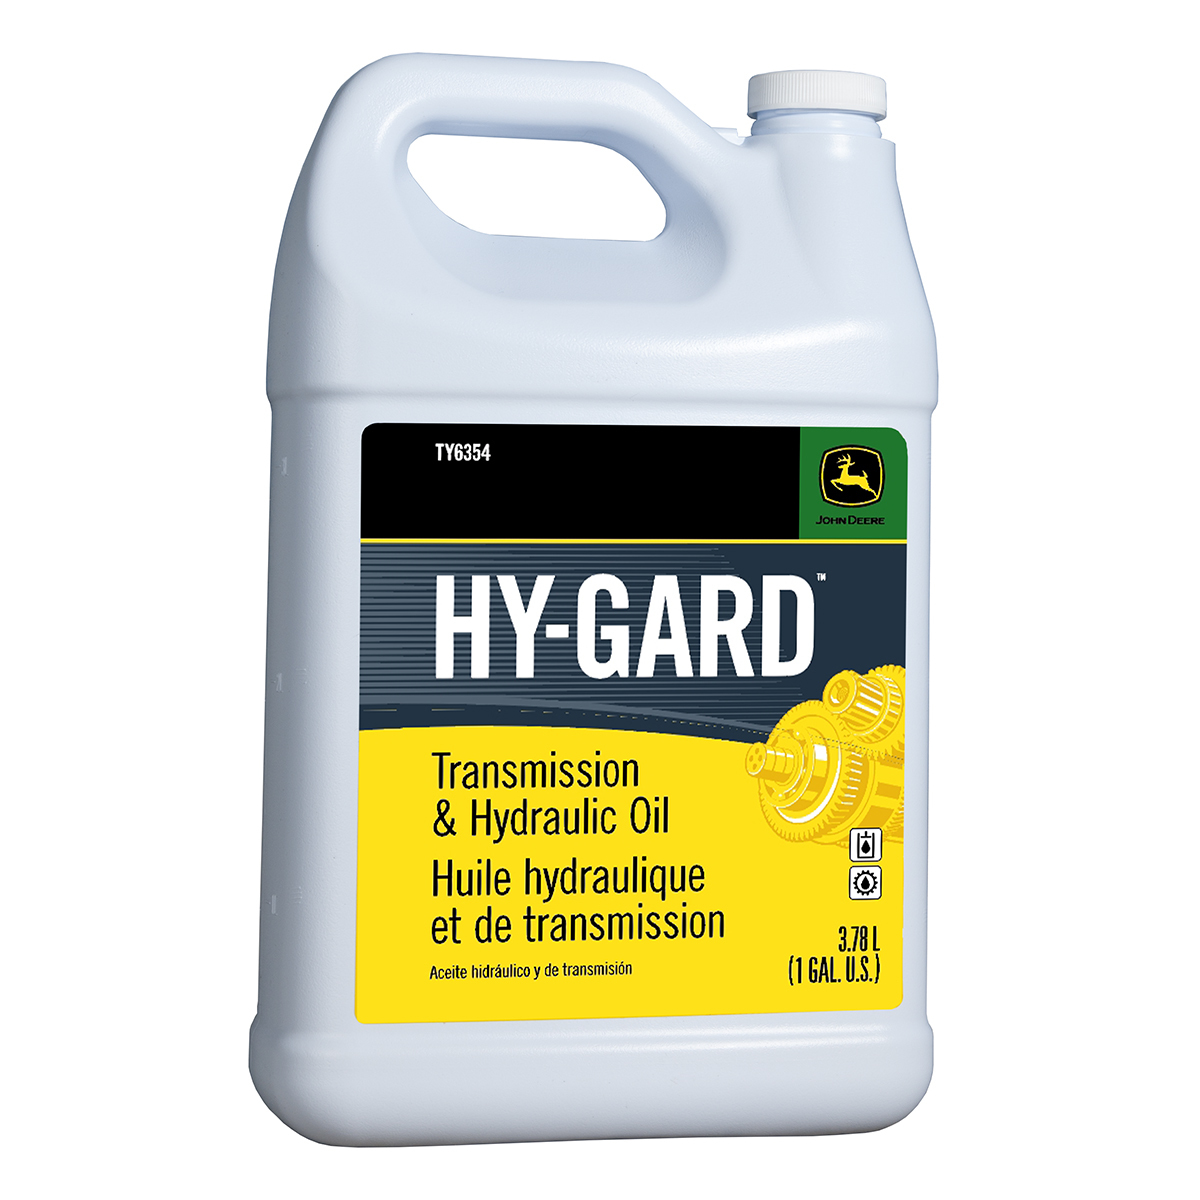 Hy-Gard Hydraulic and Transmission Oil, 1 gallon